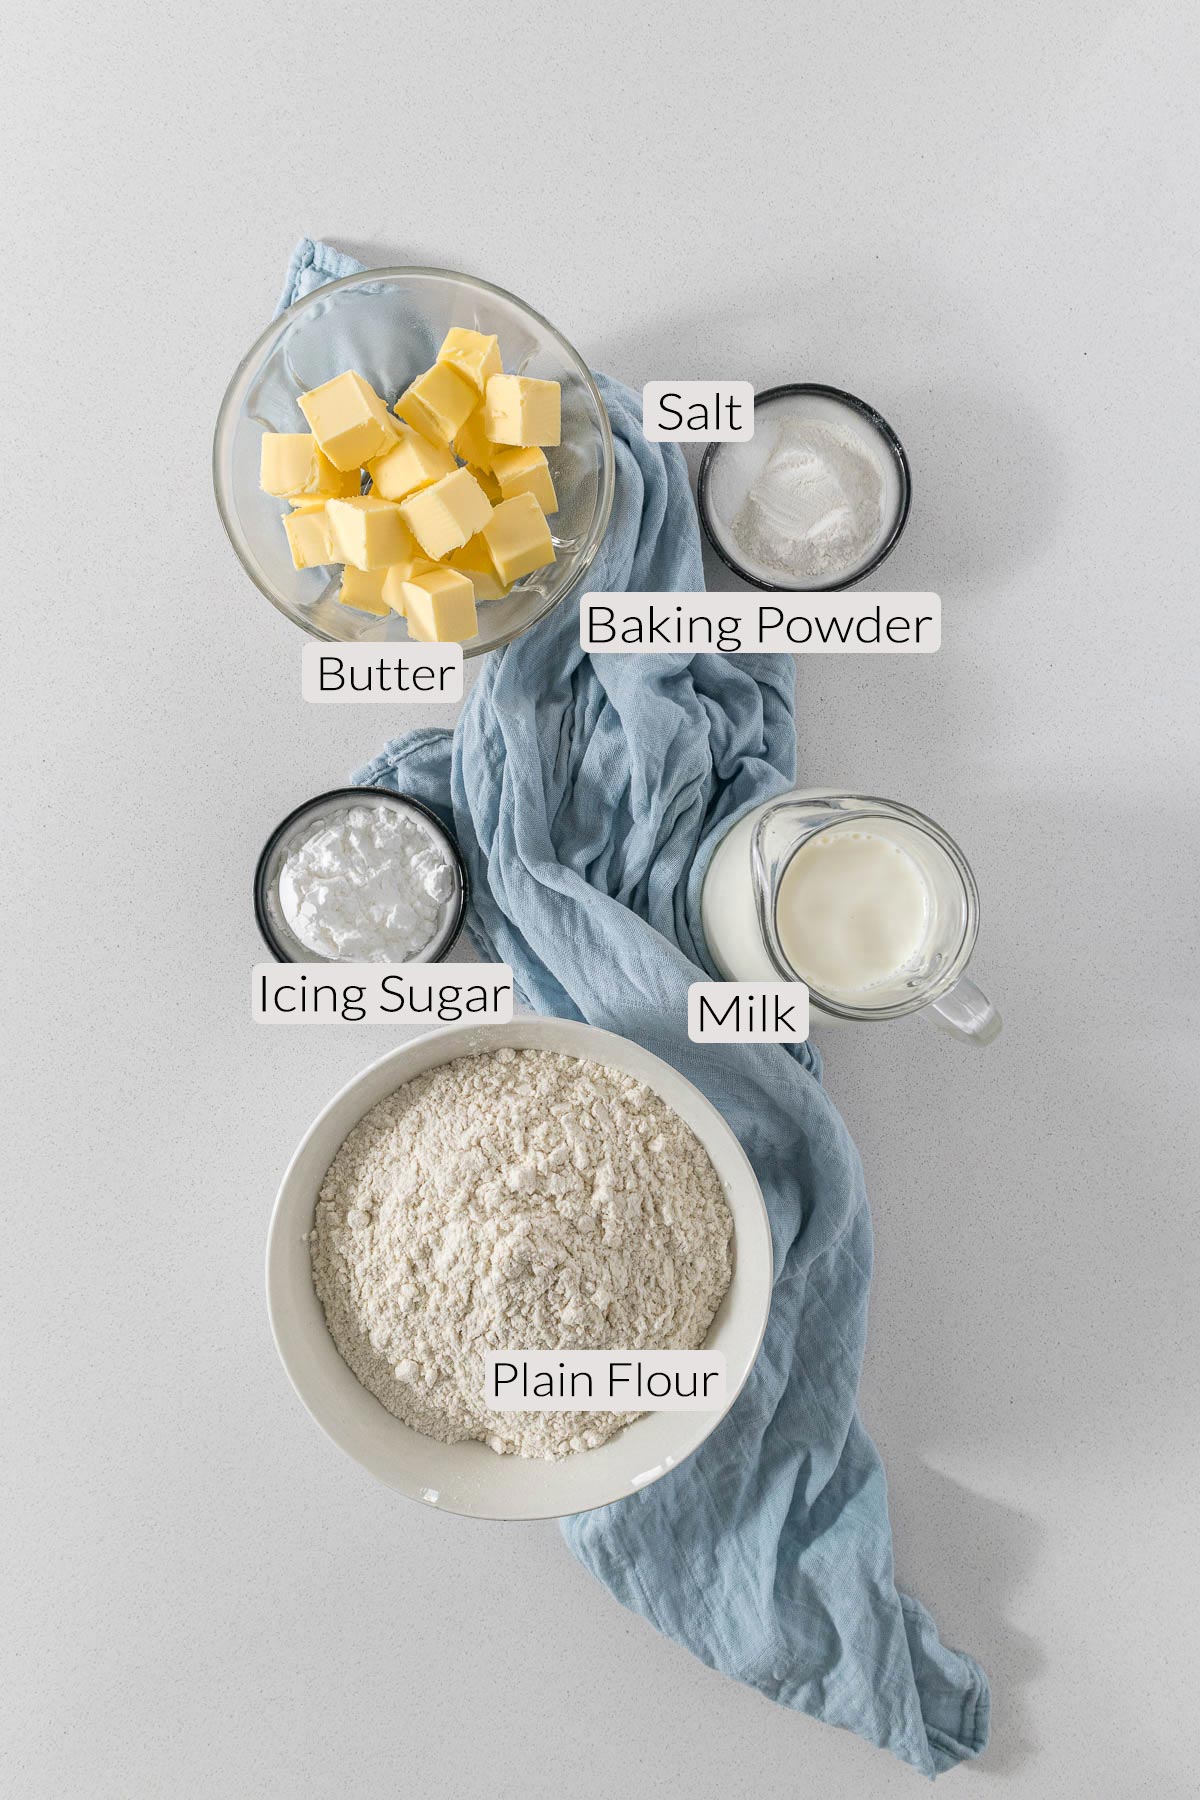 Scones ingredients - flour, baking powder, salt, milk, butter, icing sugar.